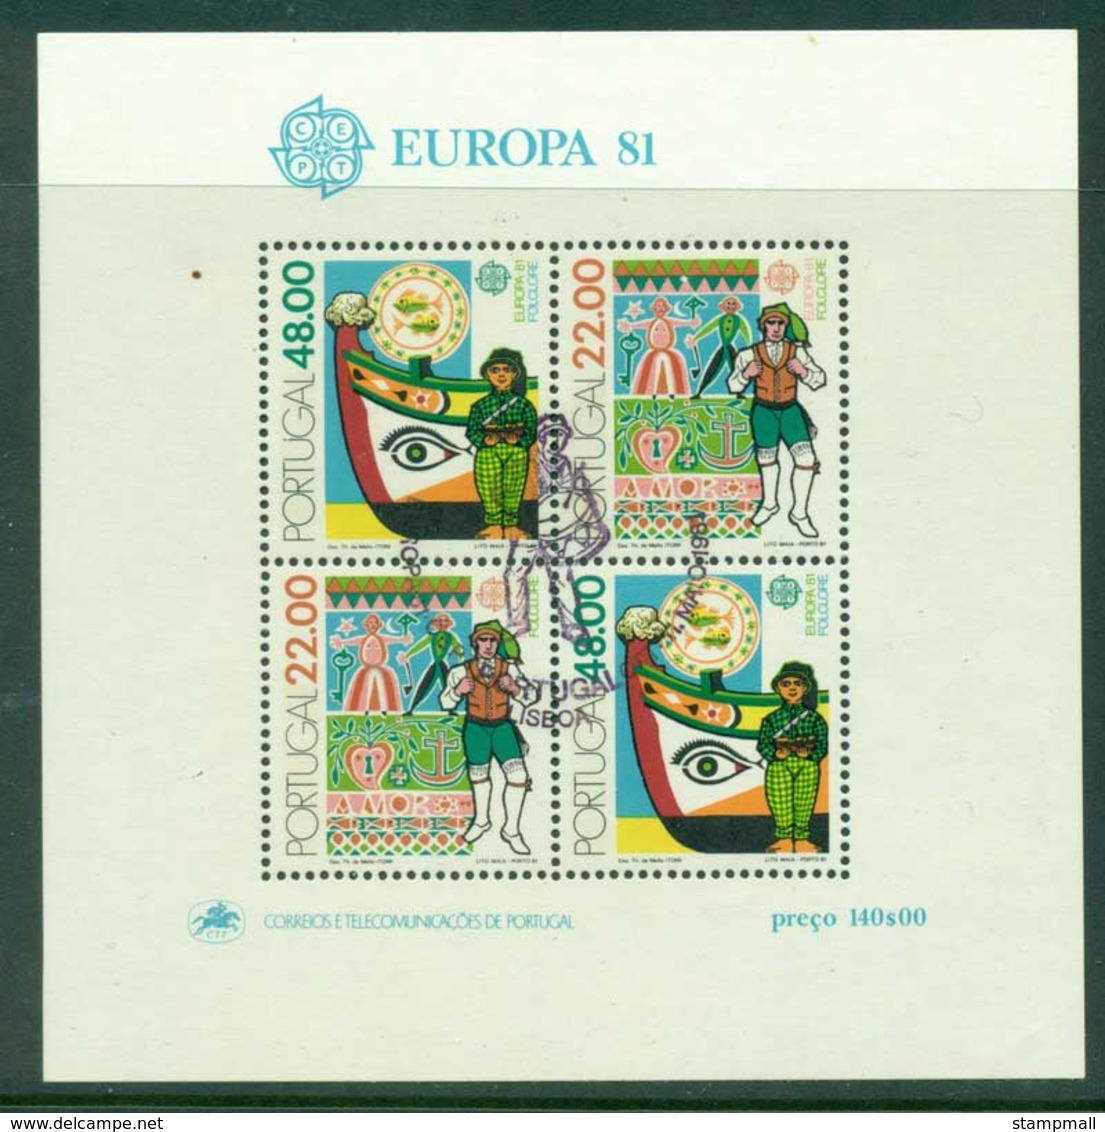 Portugal 1981 Europa MS FDI CTO Lot17432 - Nuevos